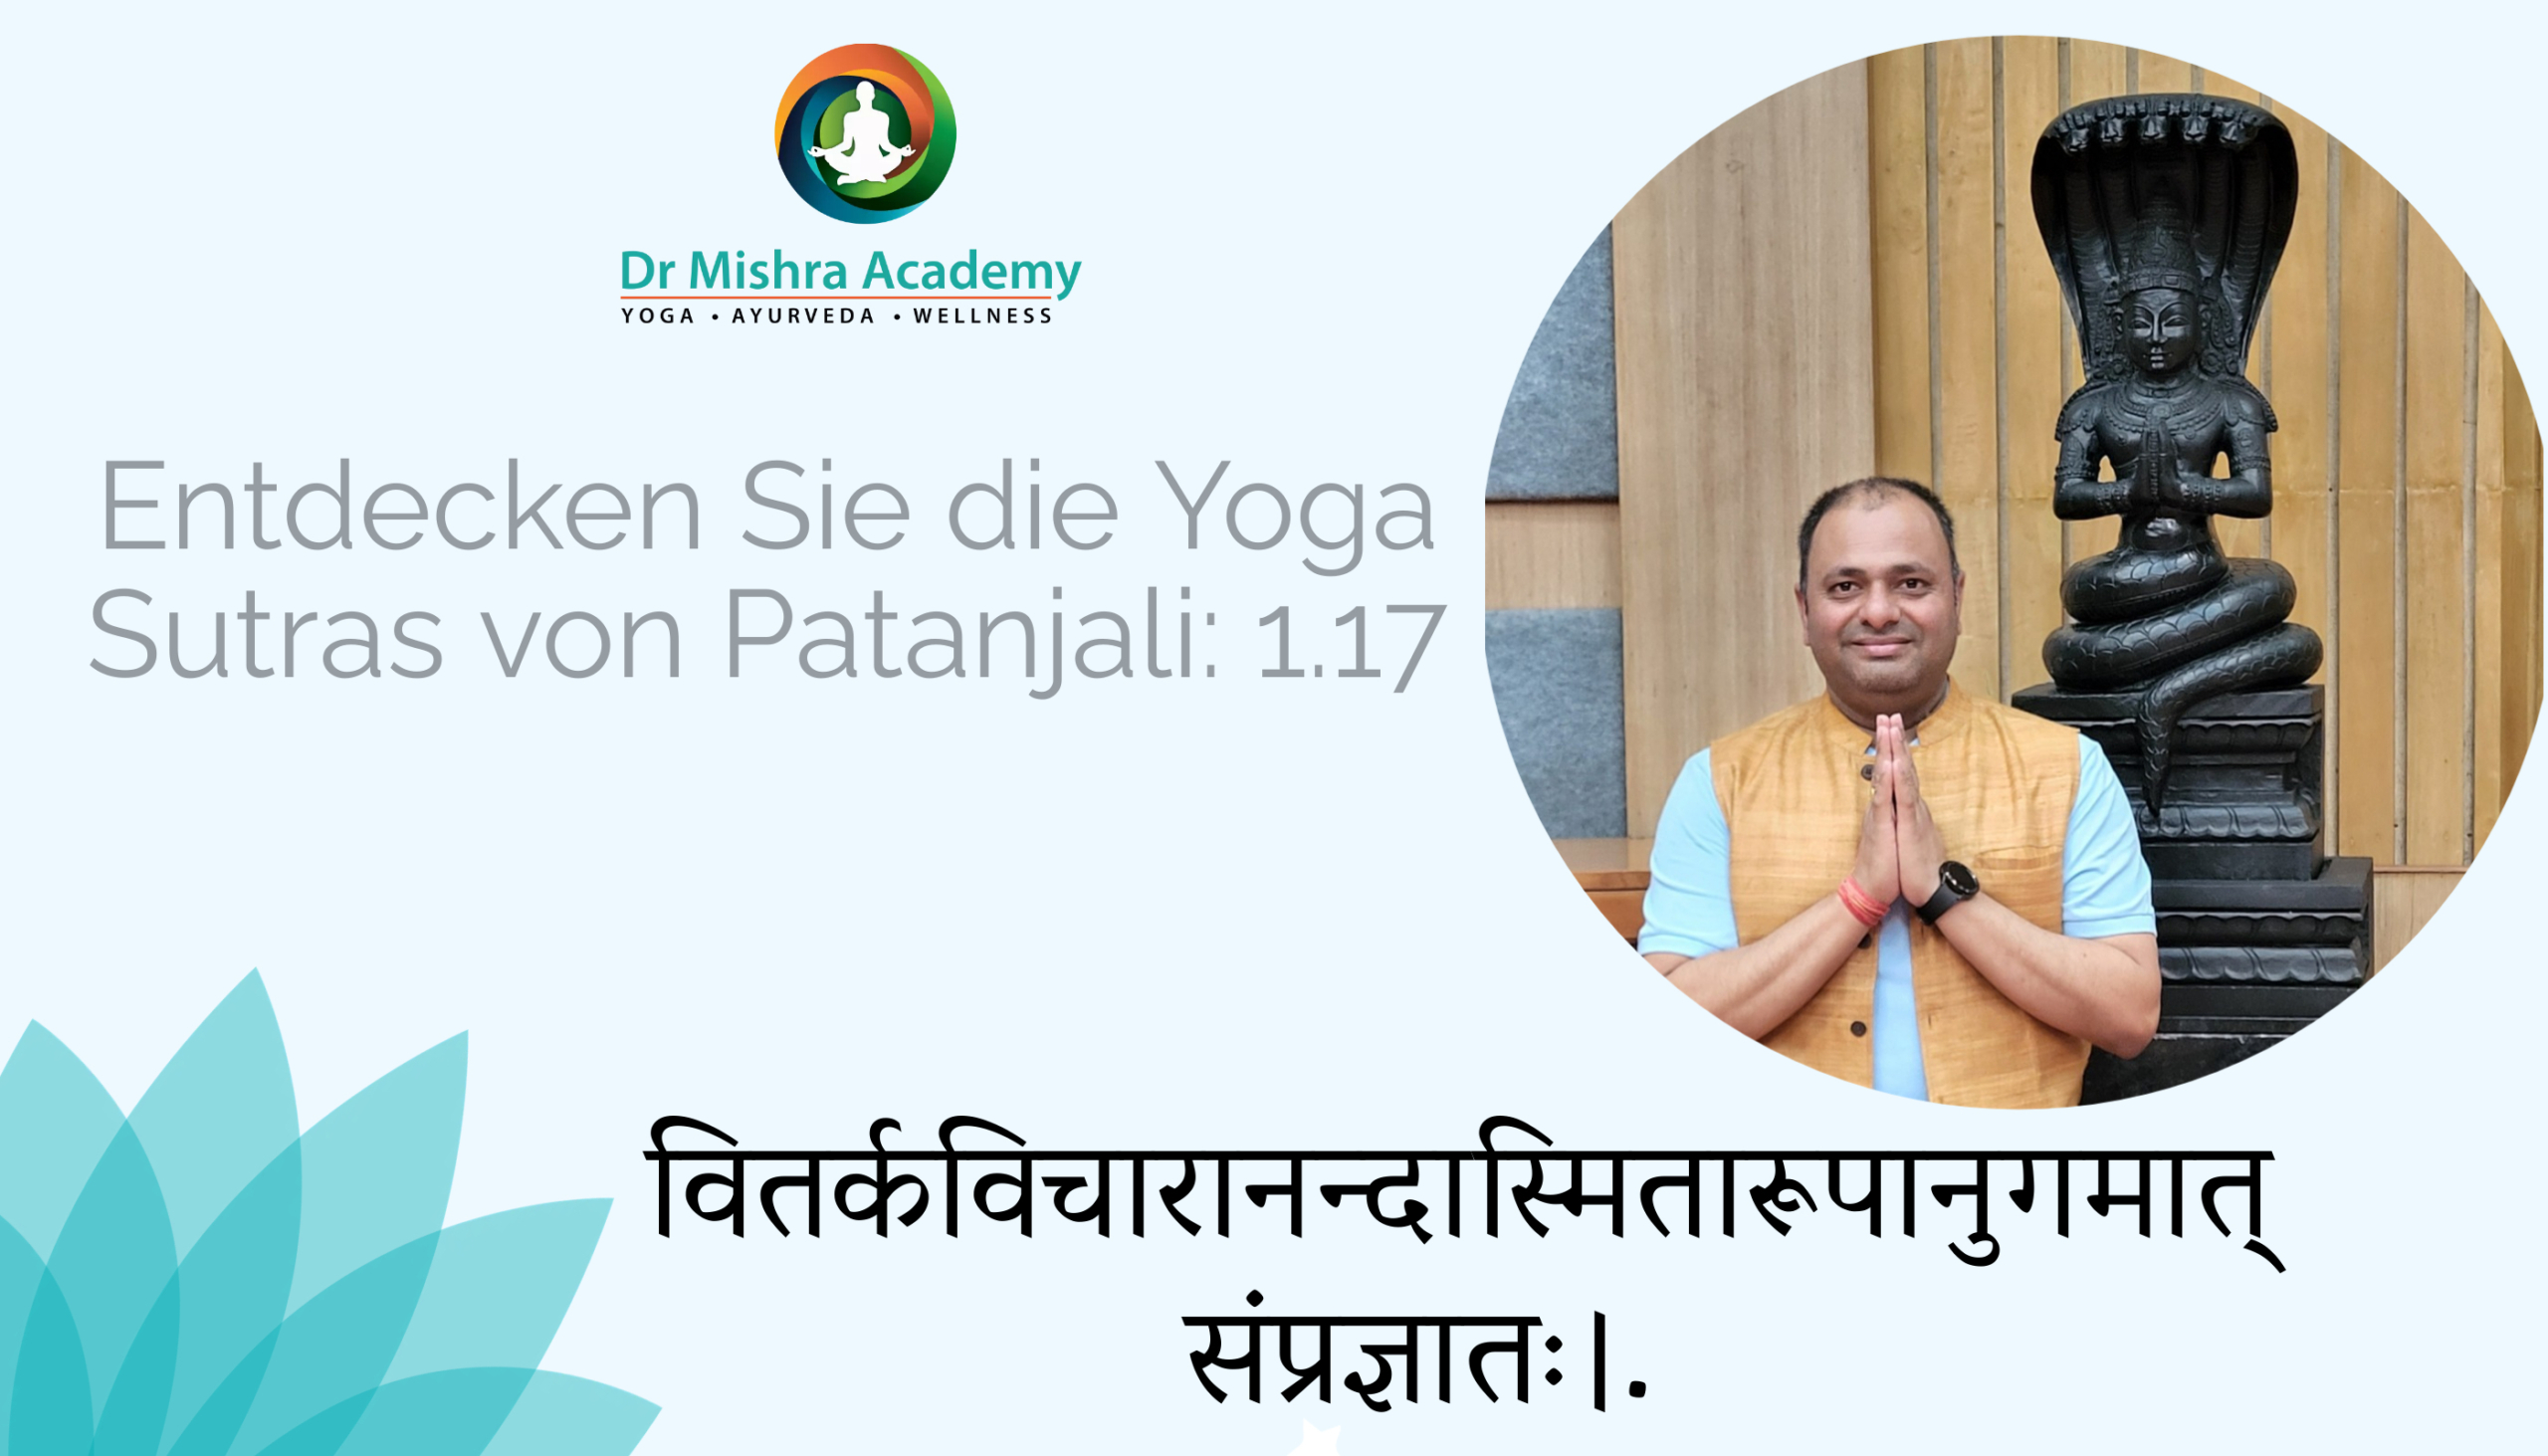  Entdecken Sie die Yoga Sutras von Patanjali: 1.17